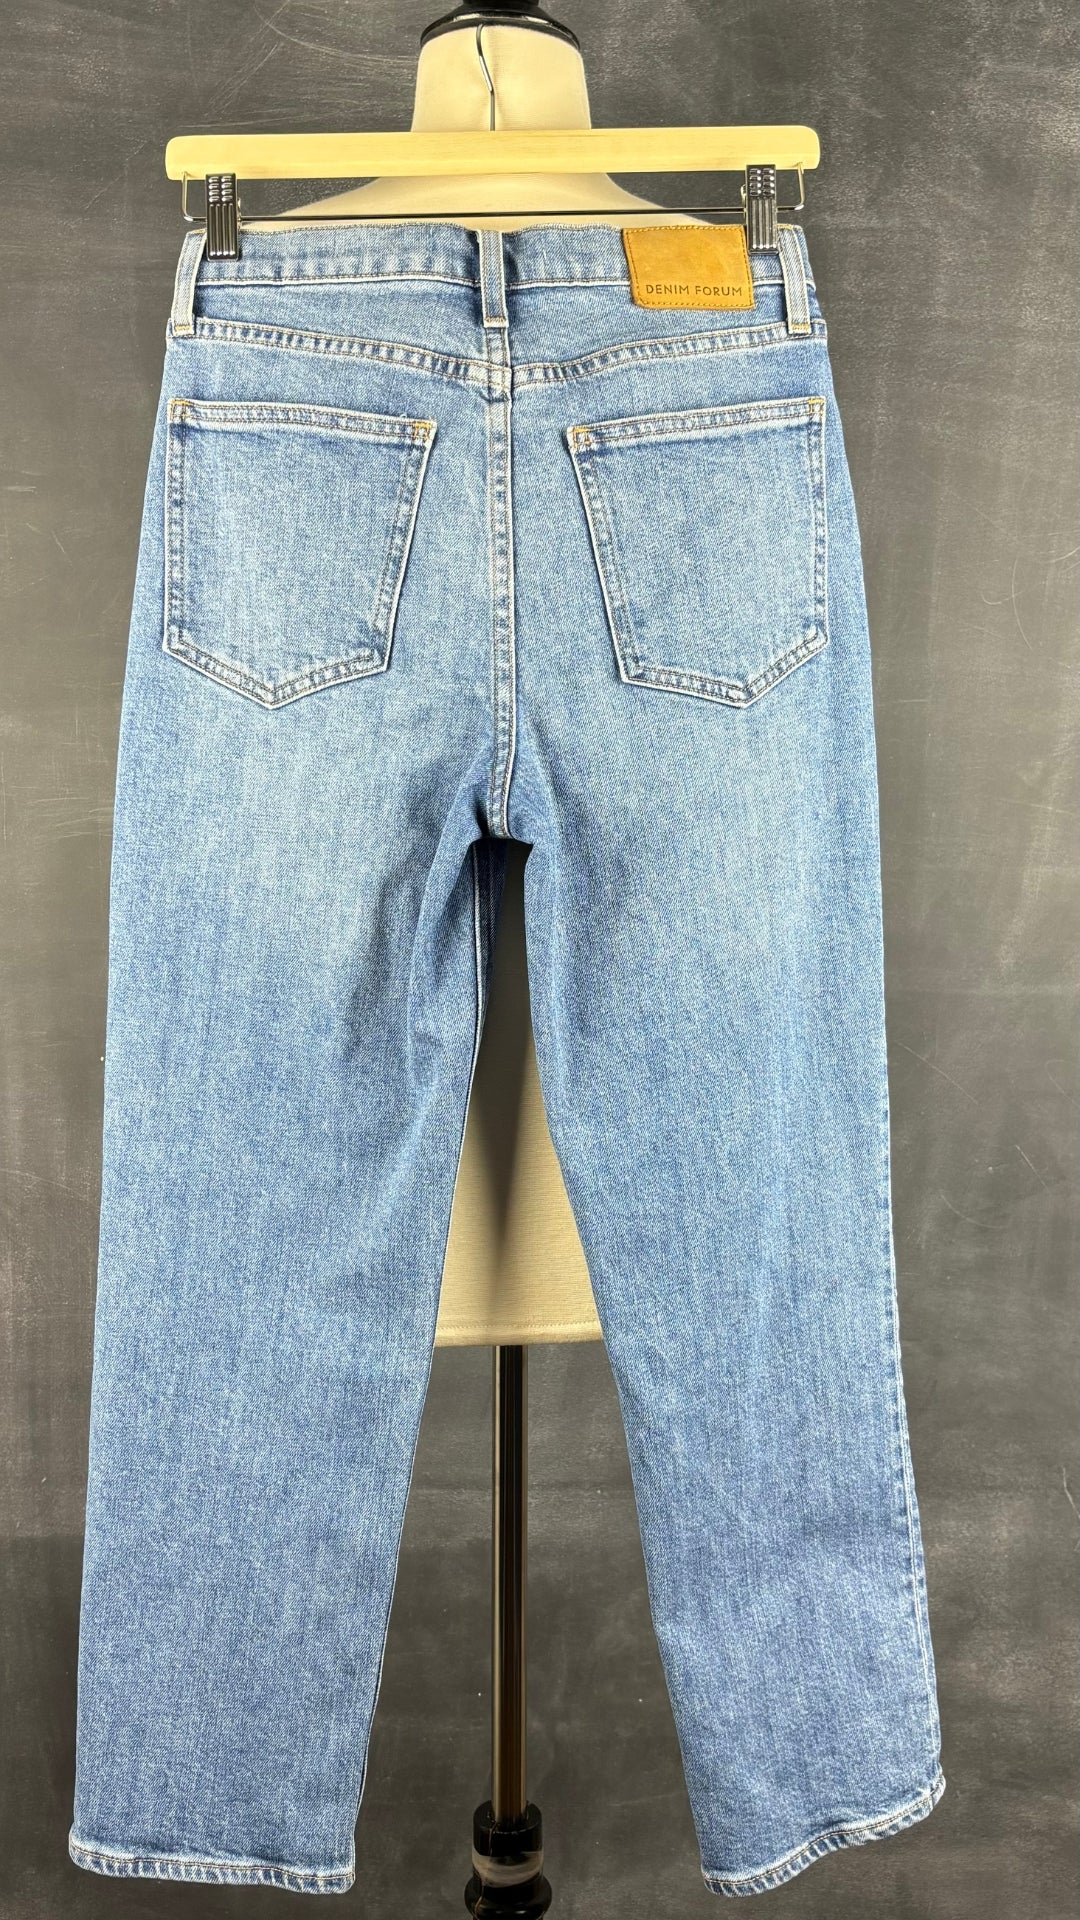 Jeans droit taille haute modèle Arlo Denim Forum, taille 26. Vue de dos.